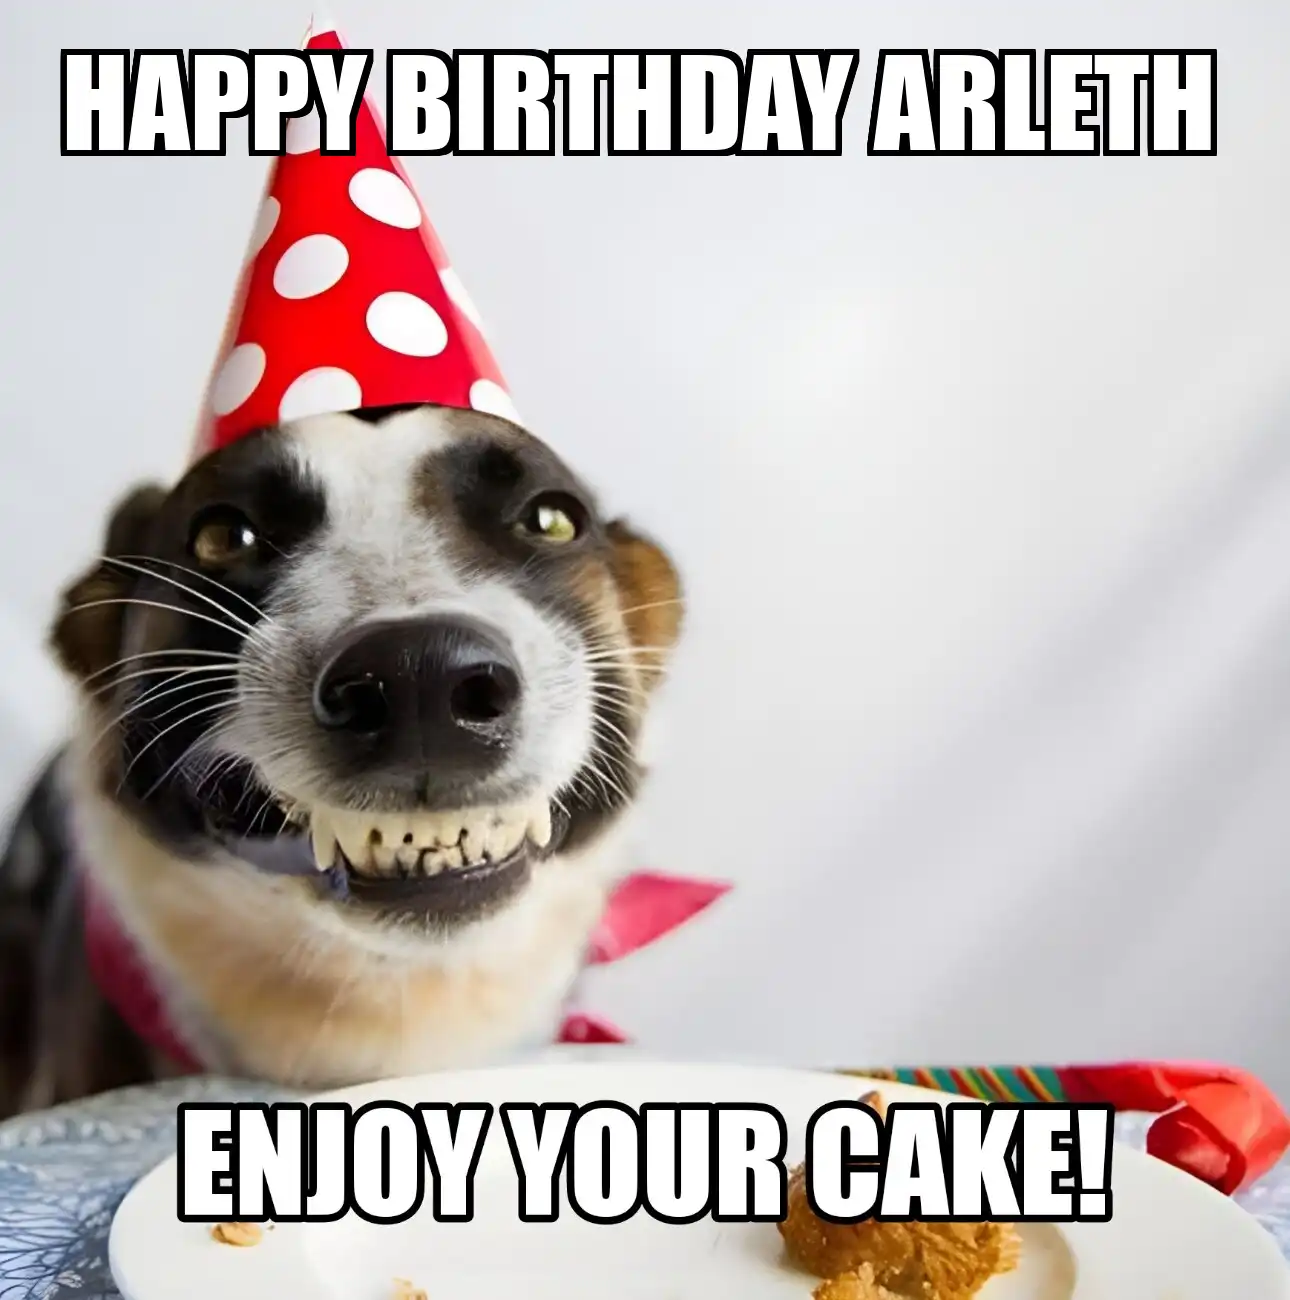 Happy Birthday Arleth Enjoy Your Cake Dog Meme